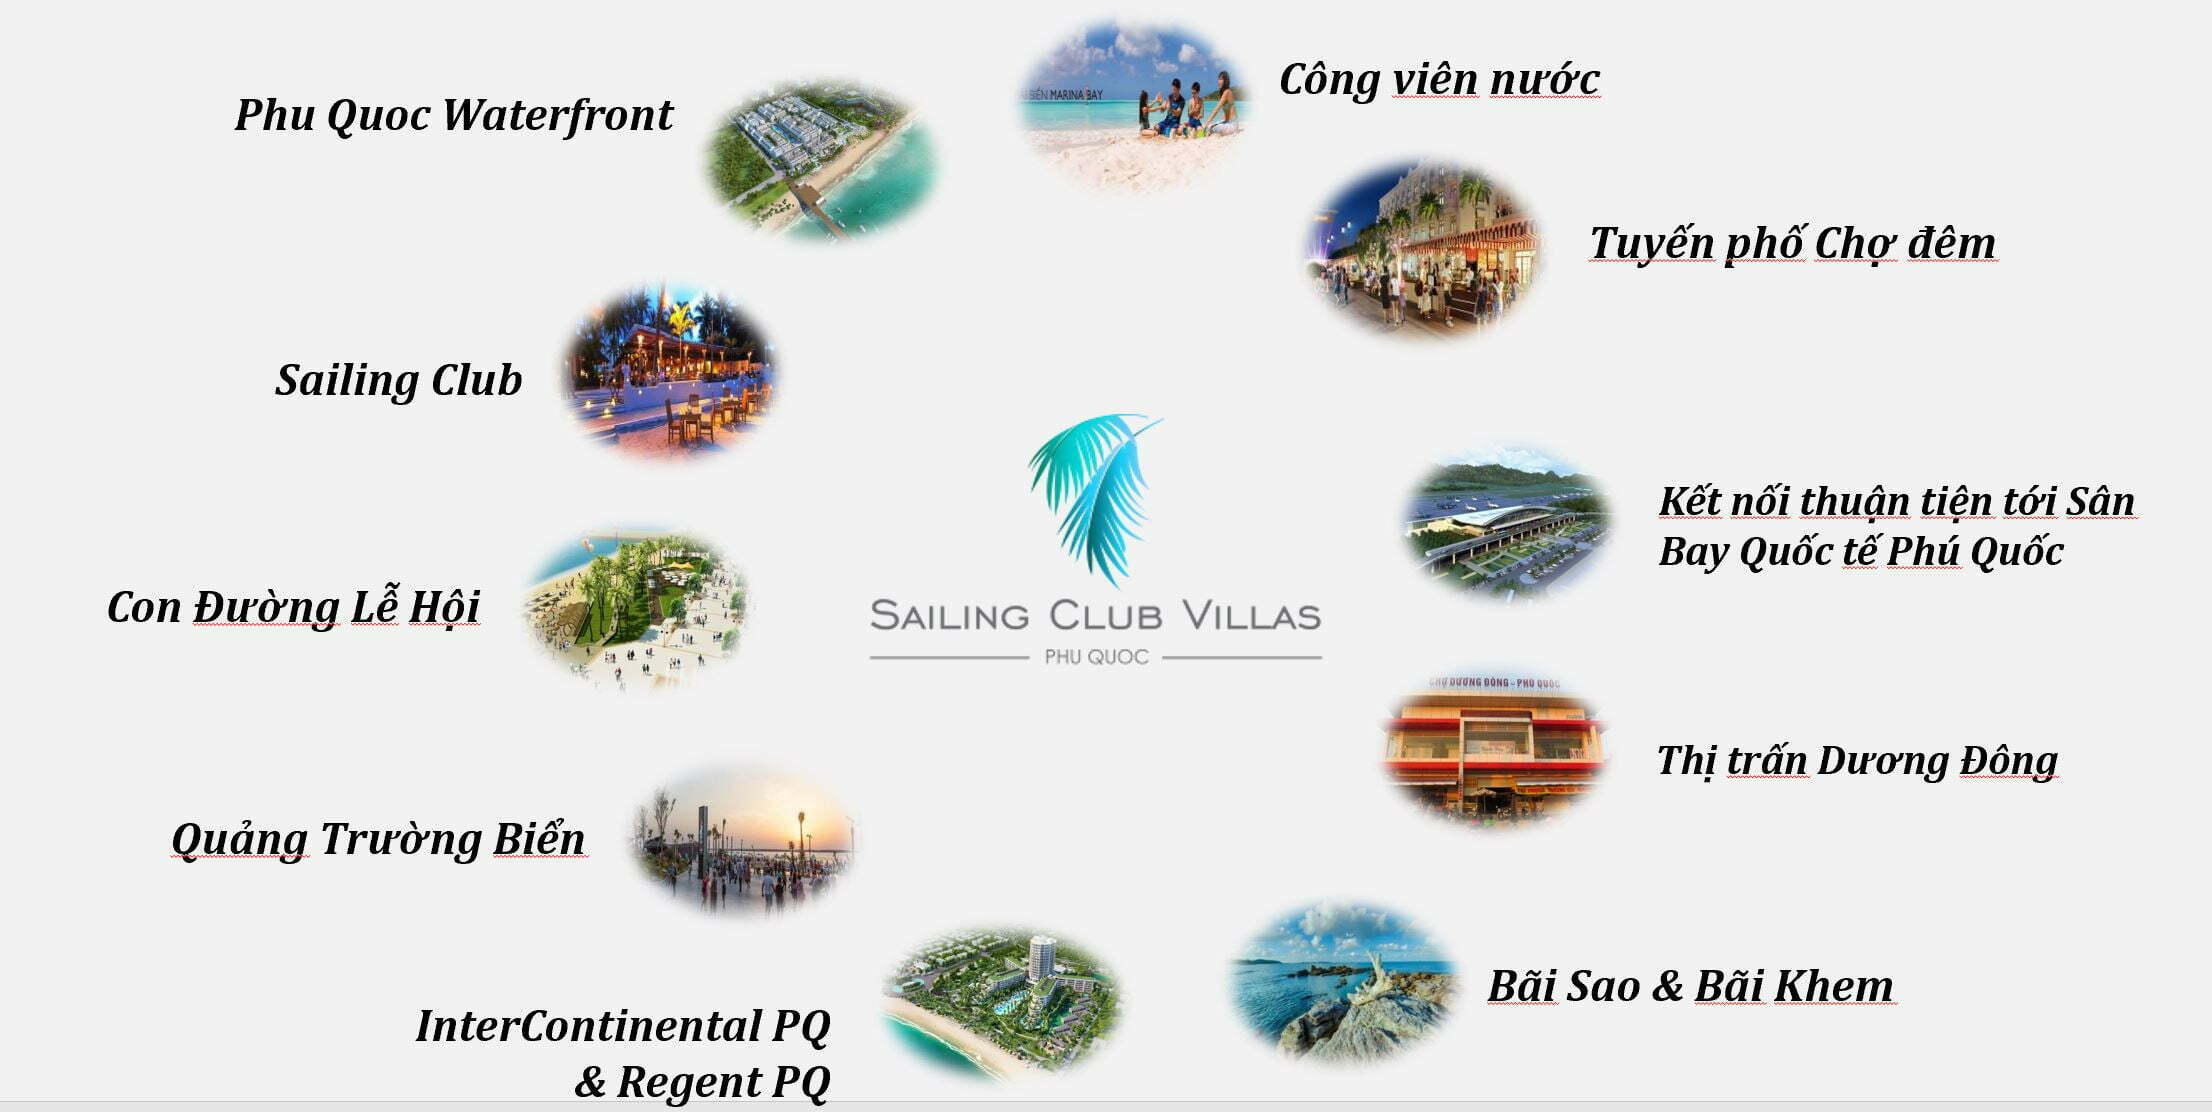 Kết nối tiện ích đa dạng với phong cách sống hiện đại phóng khoáng tại Saling Club Villas Phu Quoc